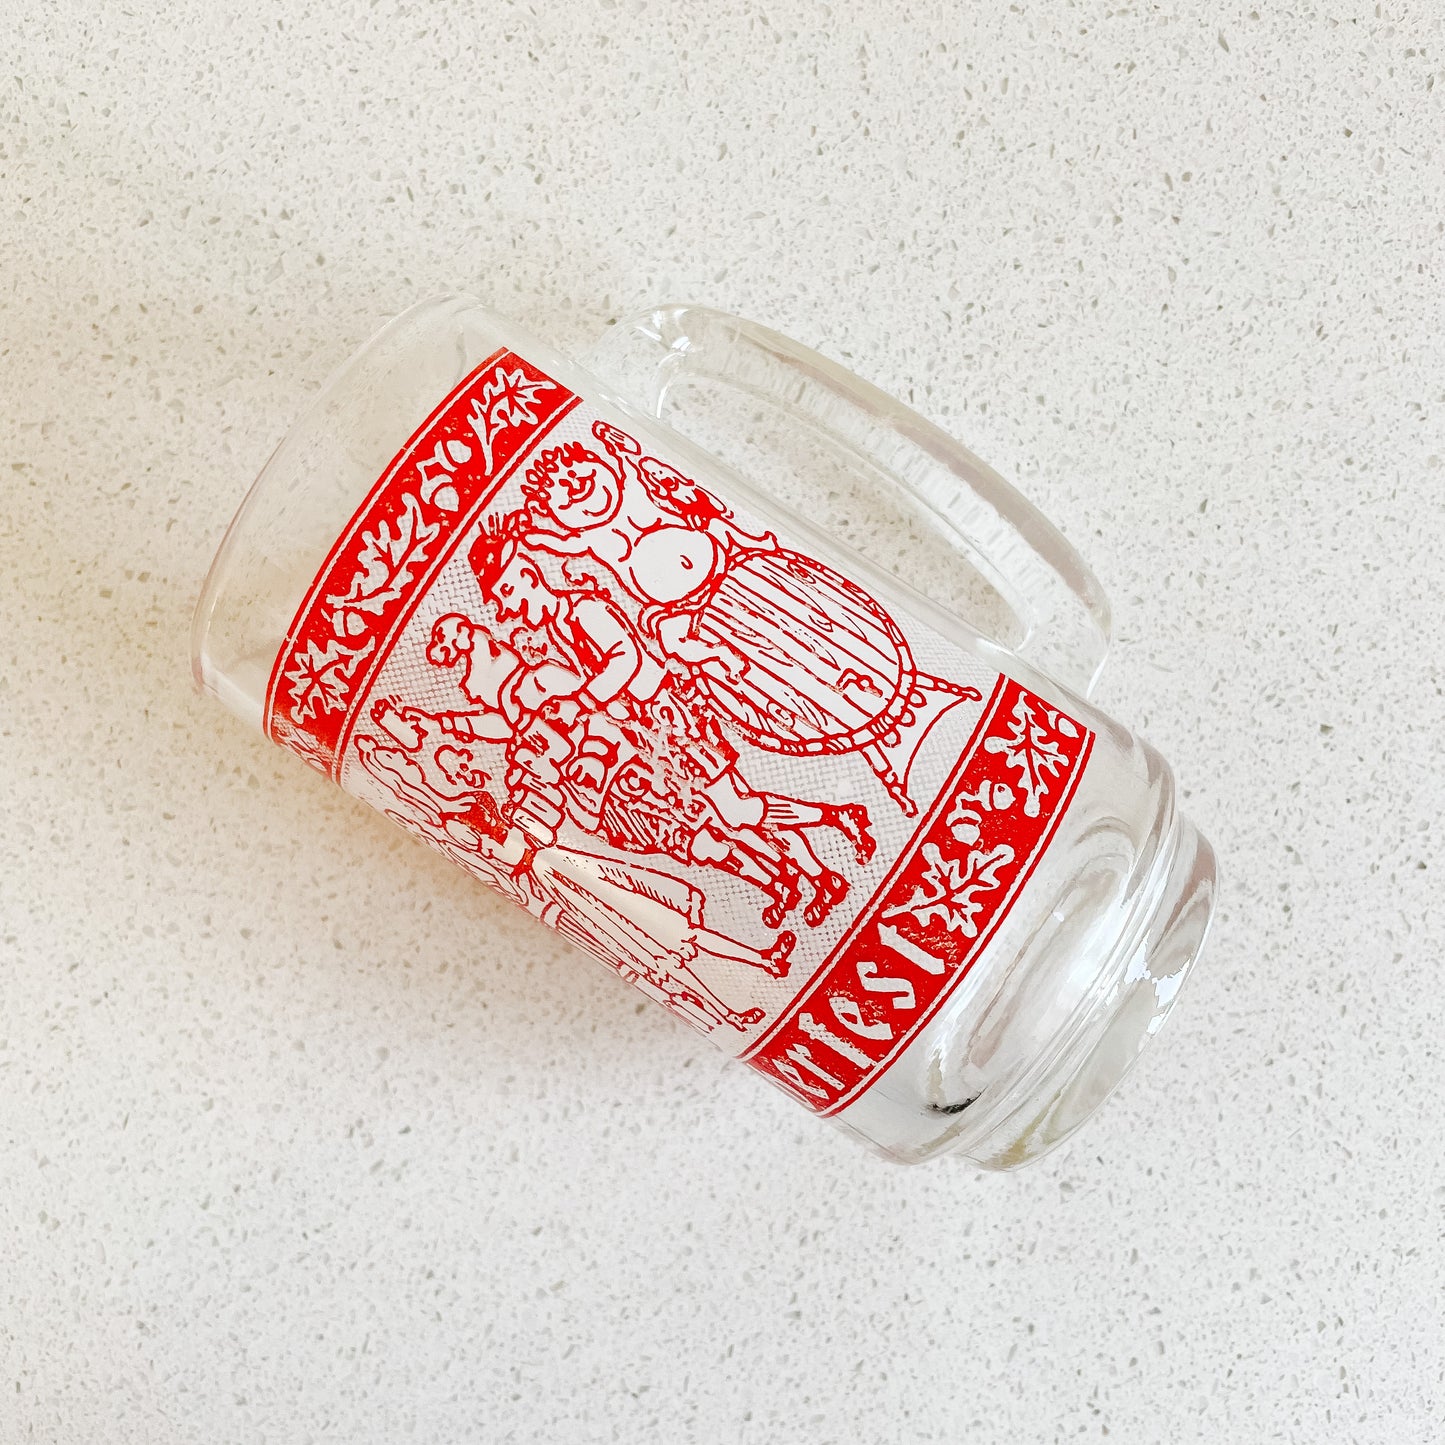 Red Oktoberfest Dominion Glass Beer Stein